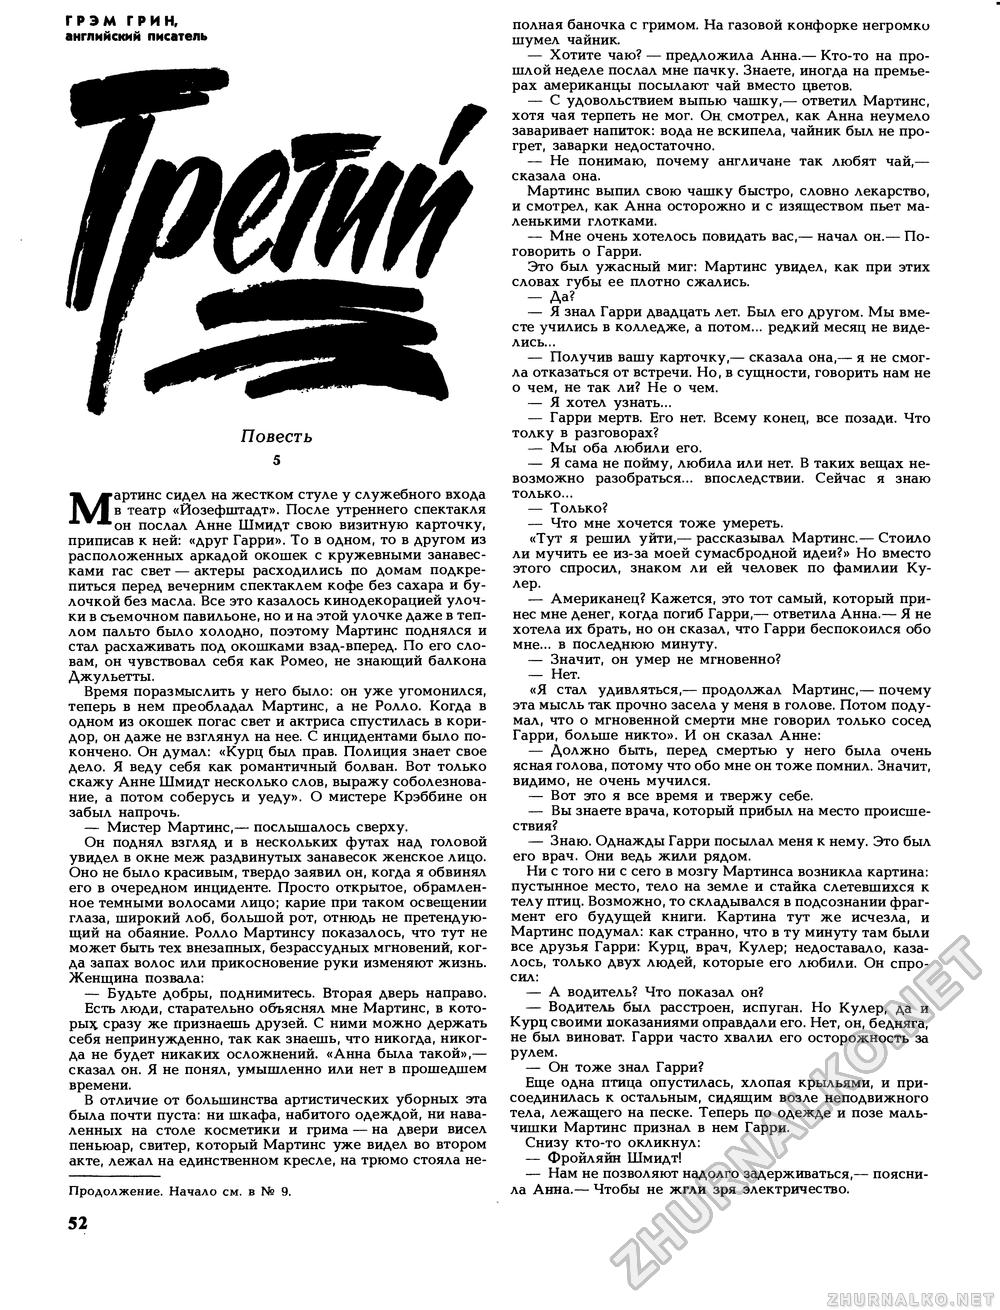 Вокруг света 1989-10, страница 54